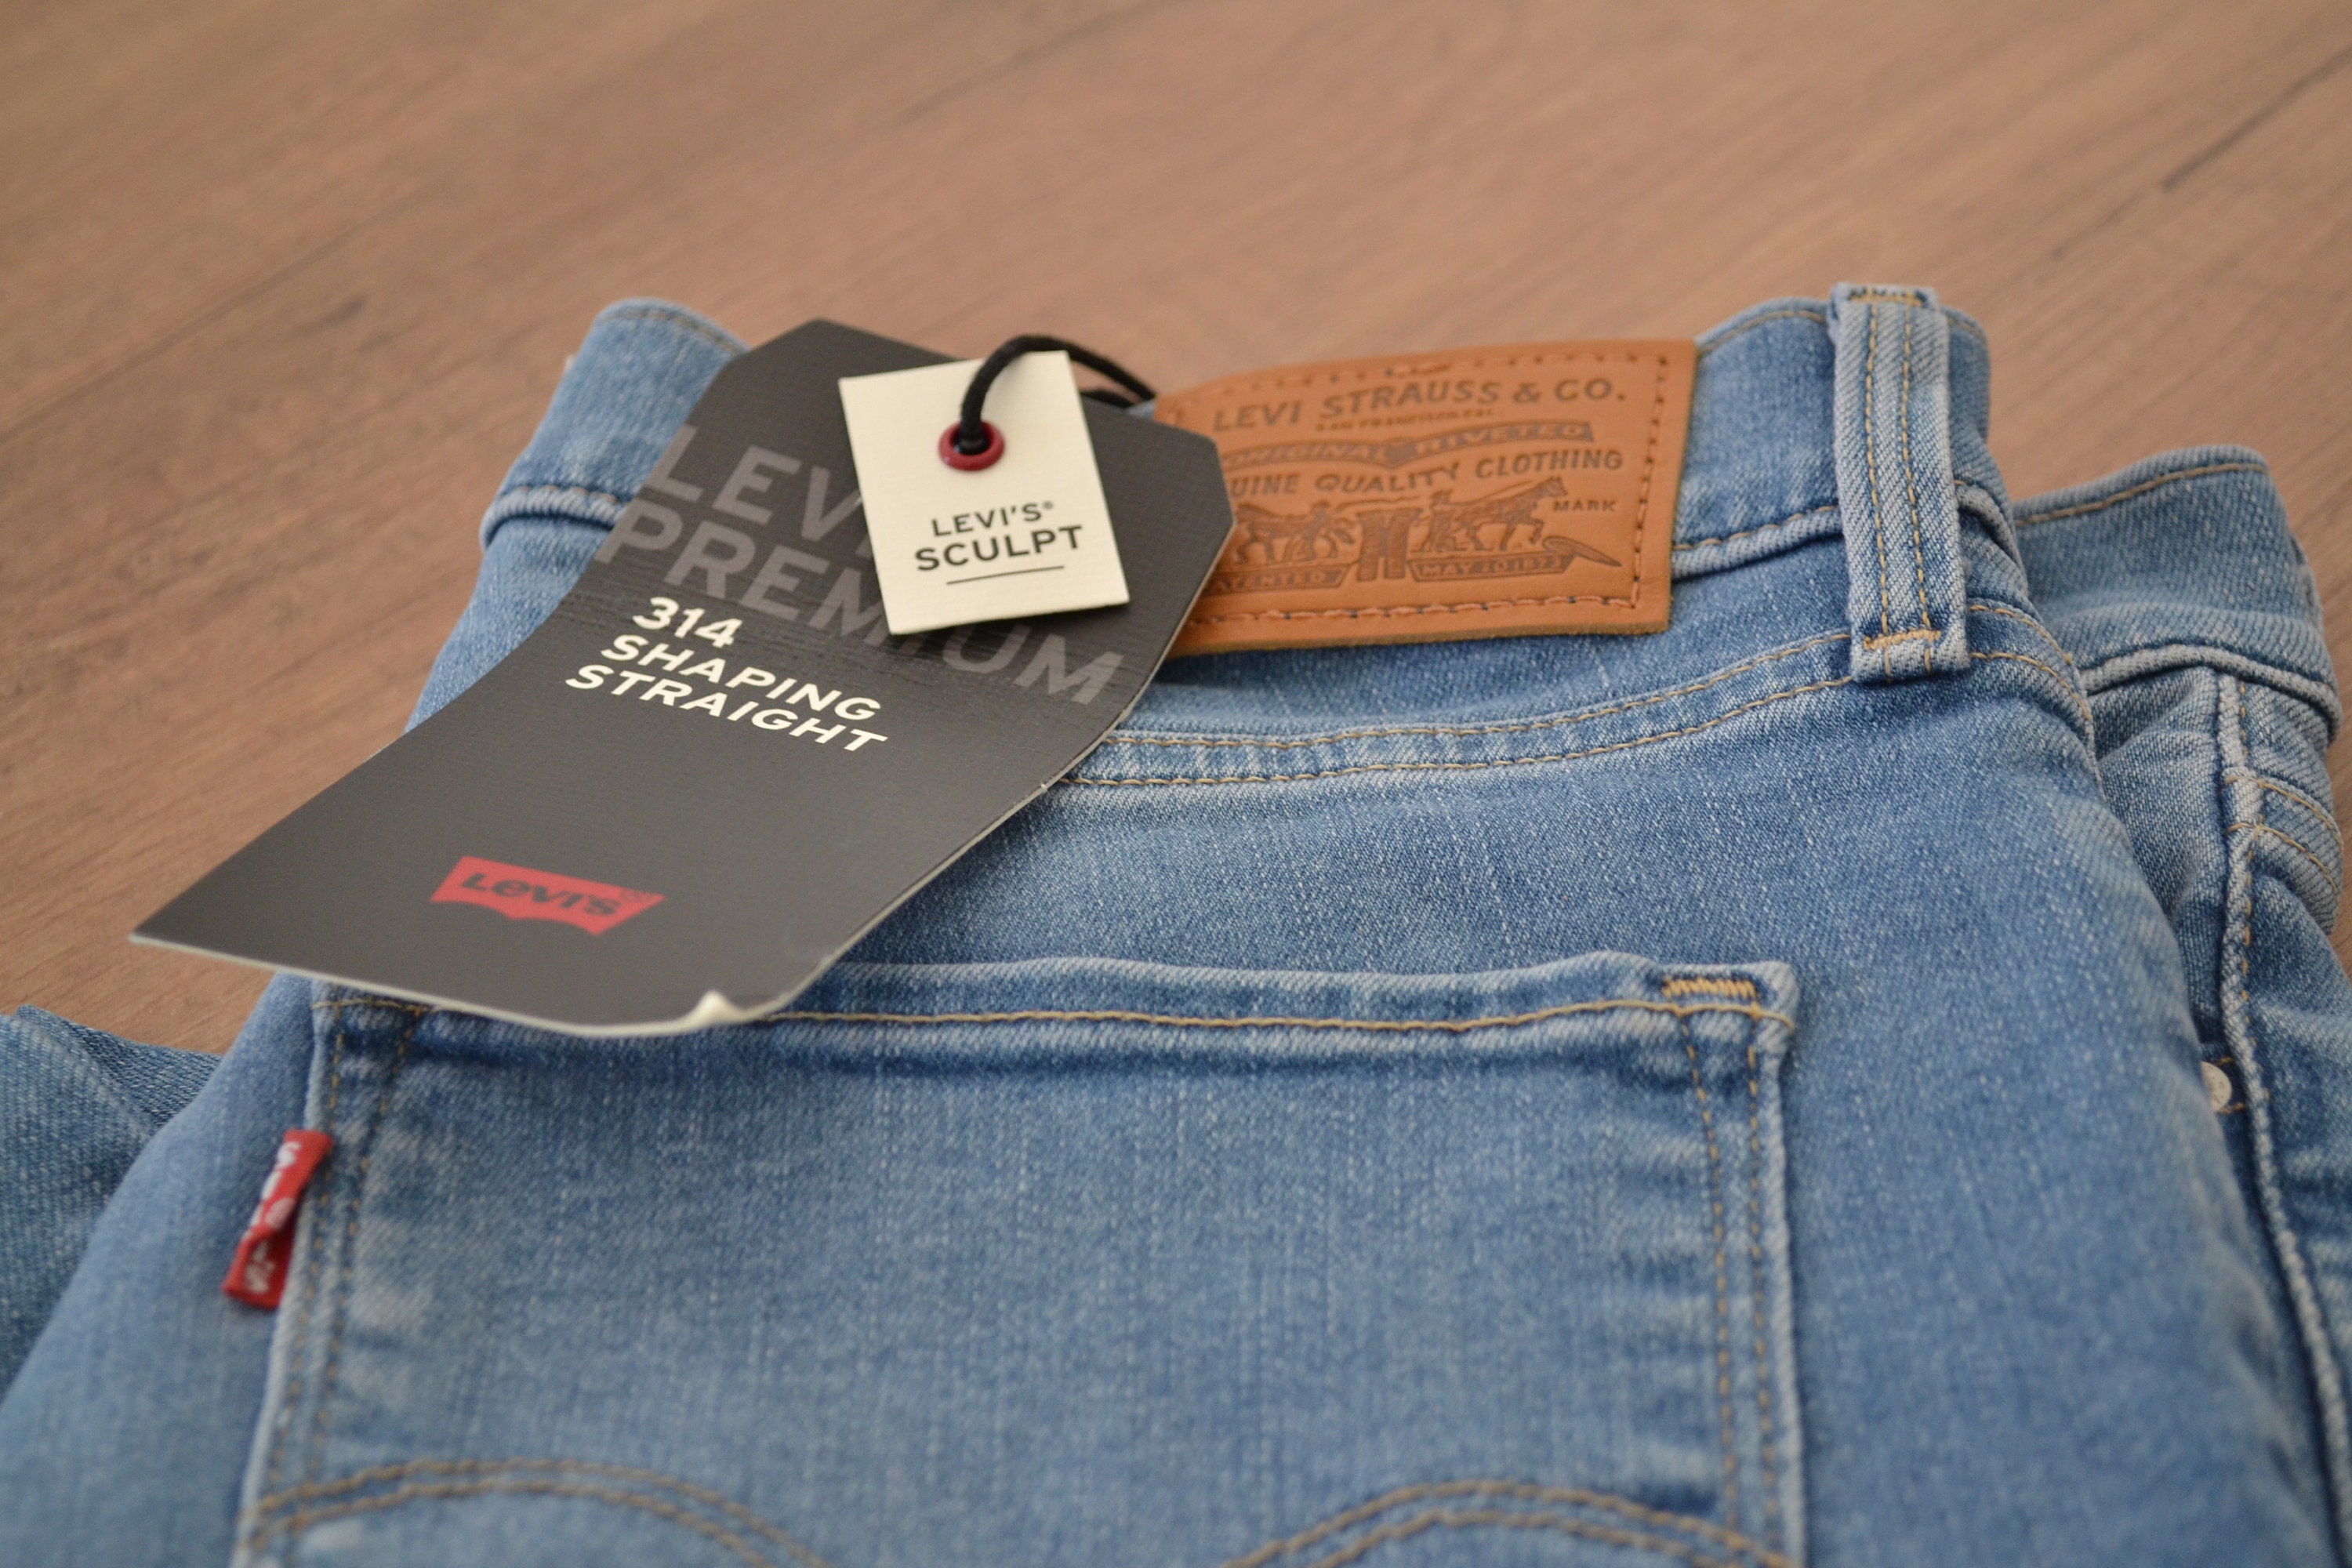 314 Levis Premium Jeans Size 29 Levis Sculpt Shapes Through - Etsy Hong Kong